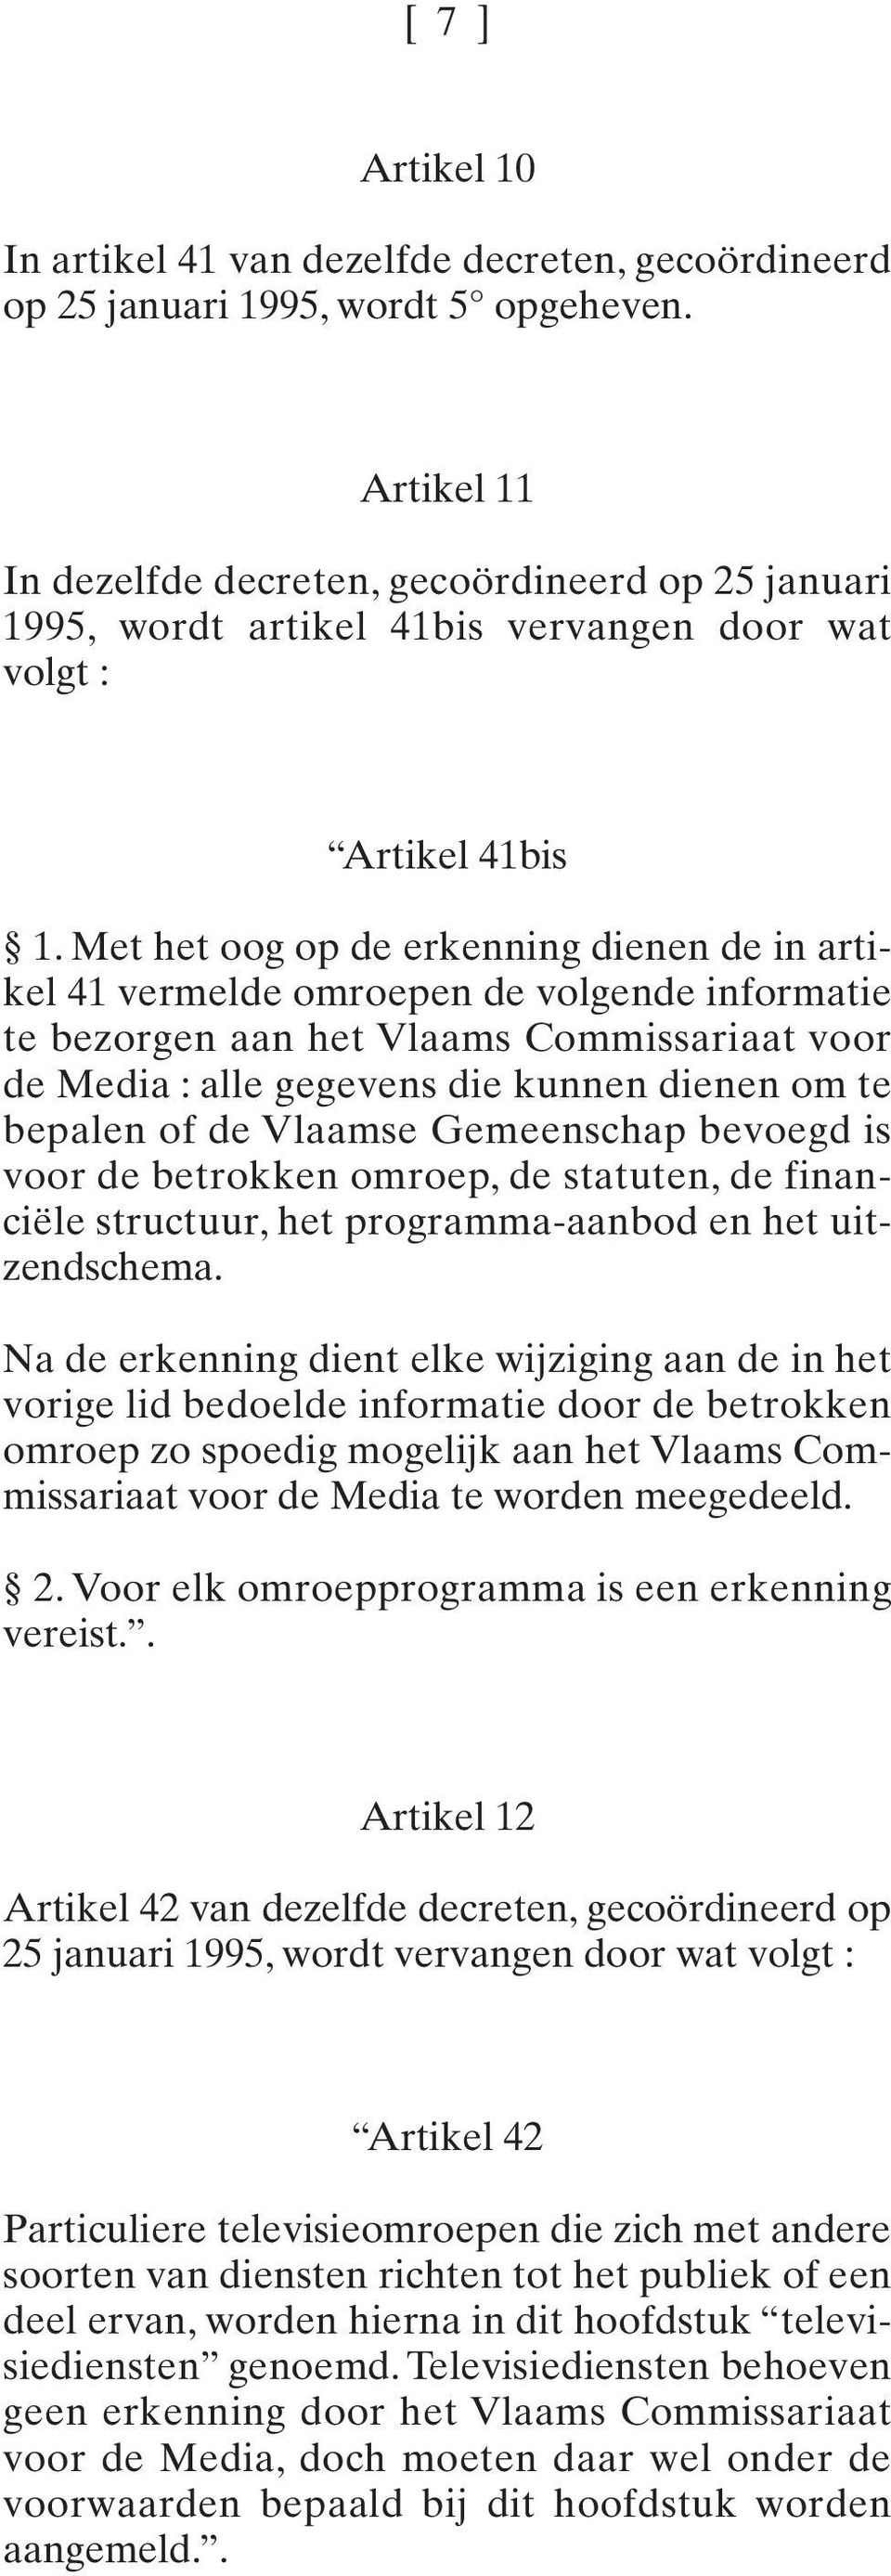 Met het oog op de erkenning dienen de in artikel 41 vermelde omroepen de volgende informatie te bezorgen aan het Vlaams Commissariaat voor de Media : alle gegevens die kunnen dienen om te bepalen of